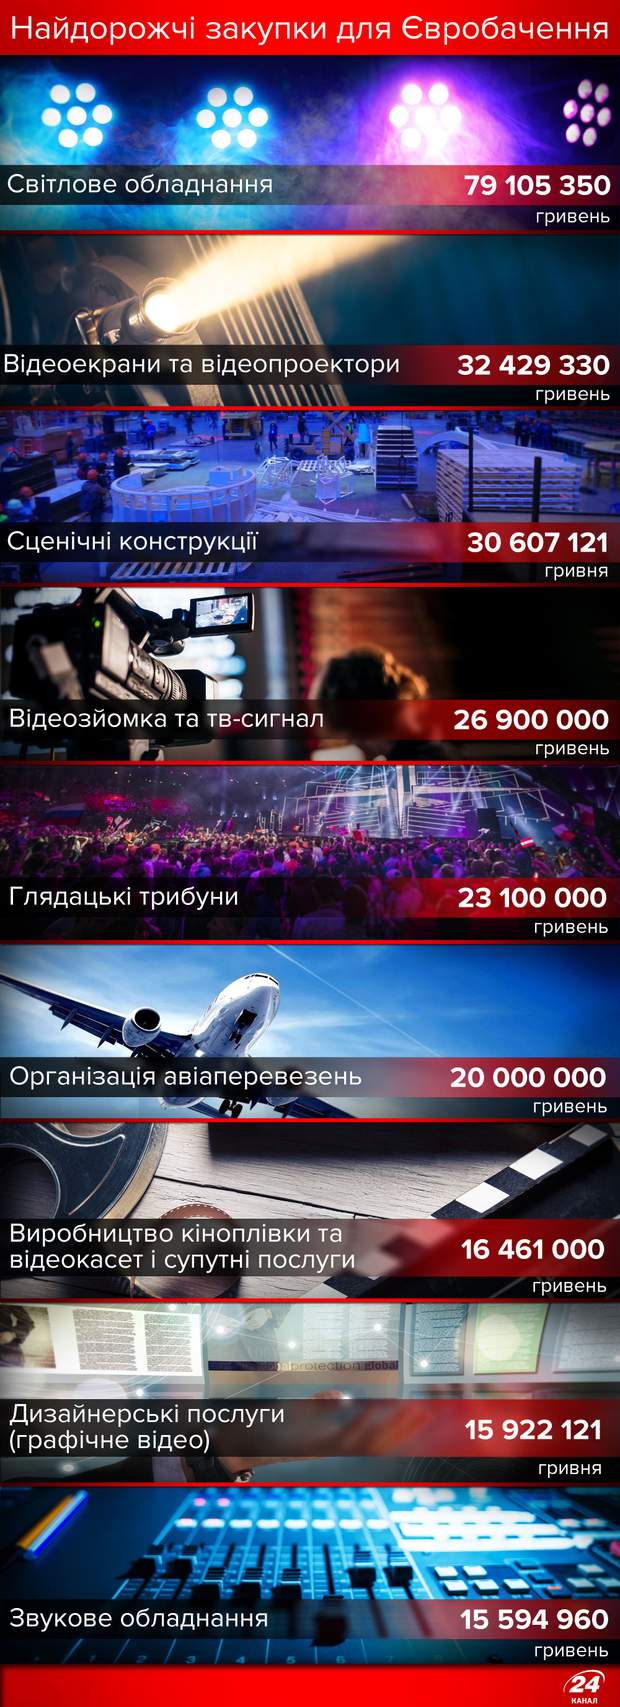 Євробачення-2017: скільки коштувало технічне обладнання